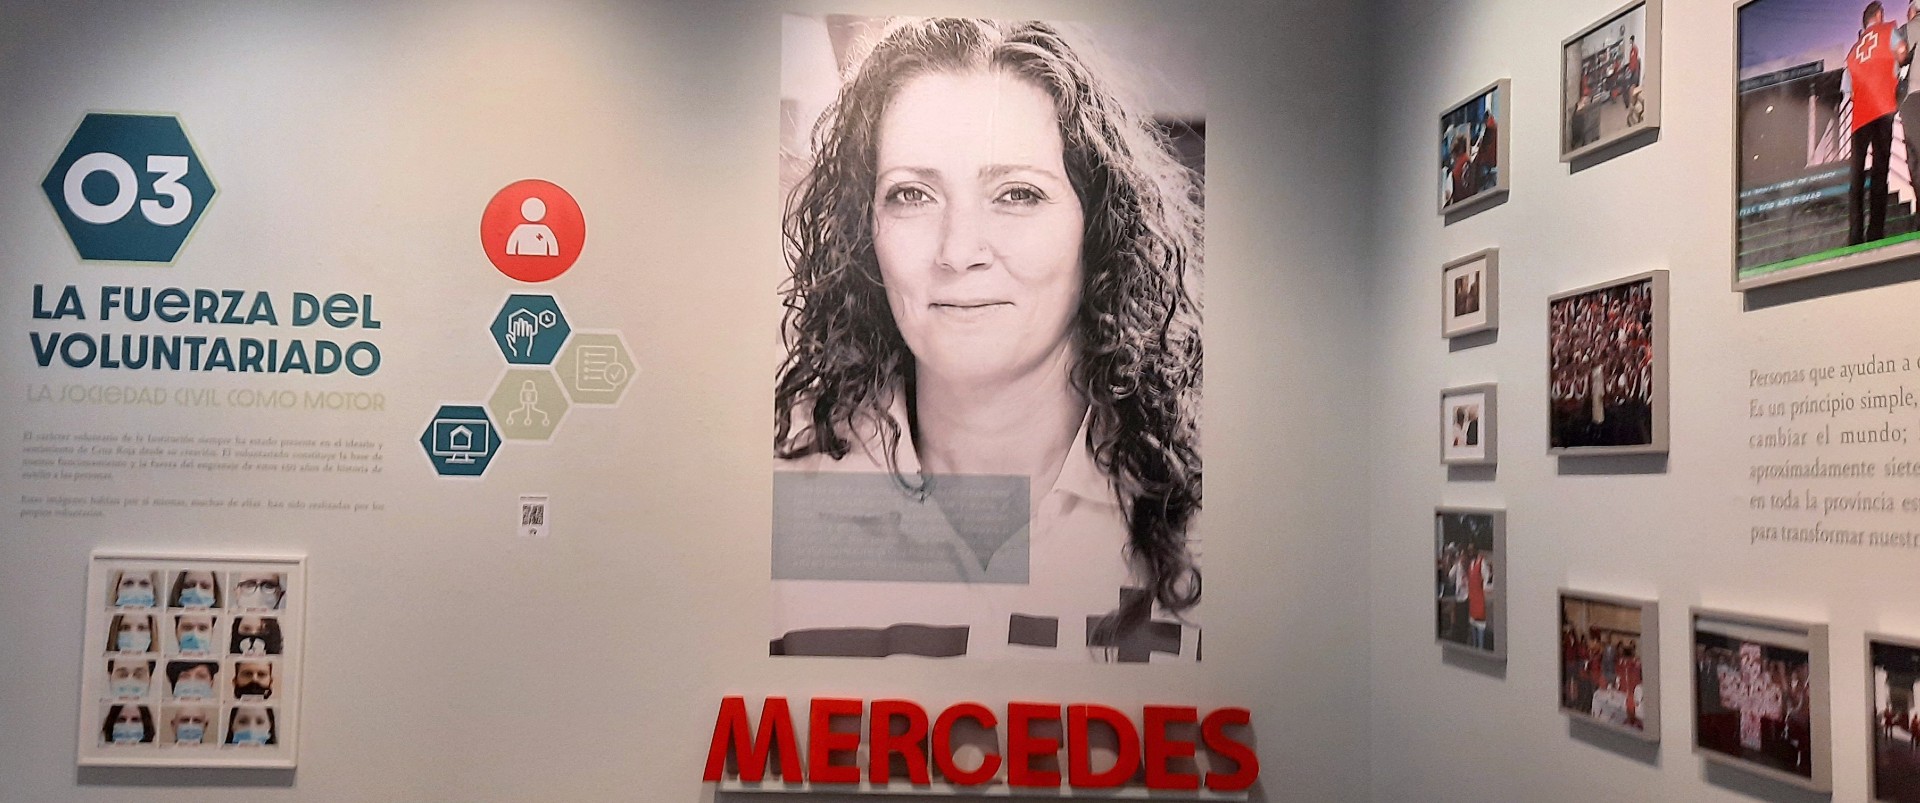 150 años de historias inolvidables de la Cruz Roja en Zaragoza